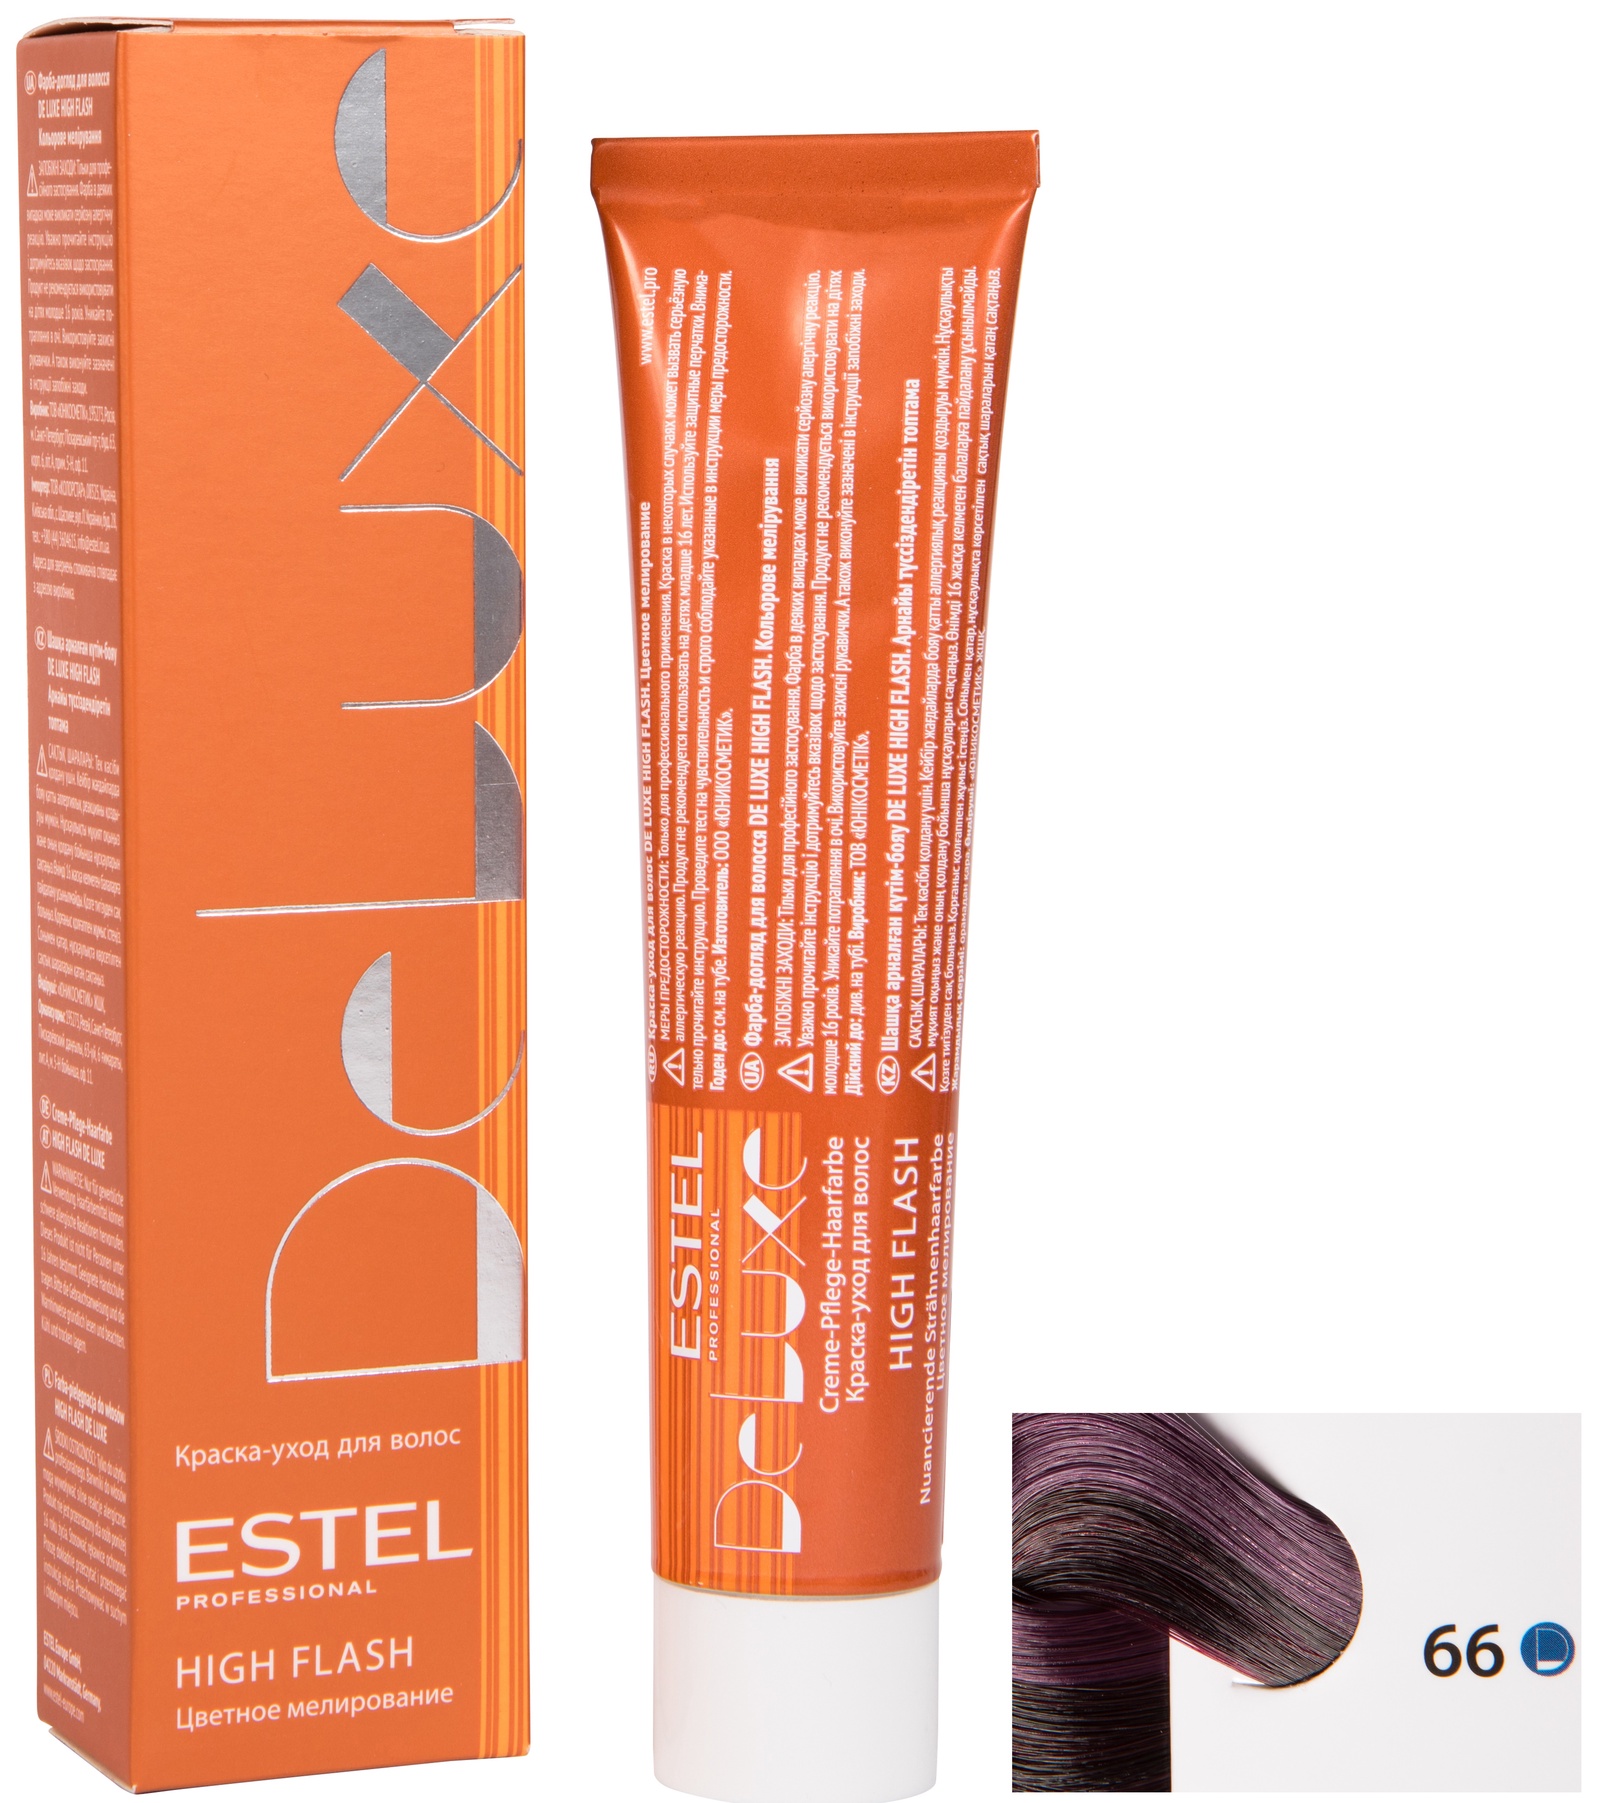 Краска для волос ESTEL PROFESSIONAL 66 DE LUXE HIGH FLASH краска-уход для мелирования волос, фиолетовый интенсивный 60 мл